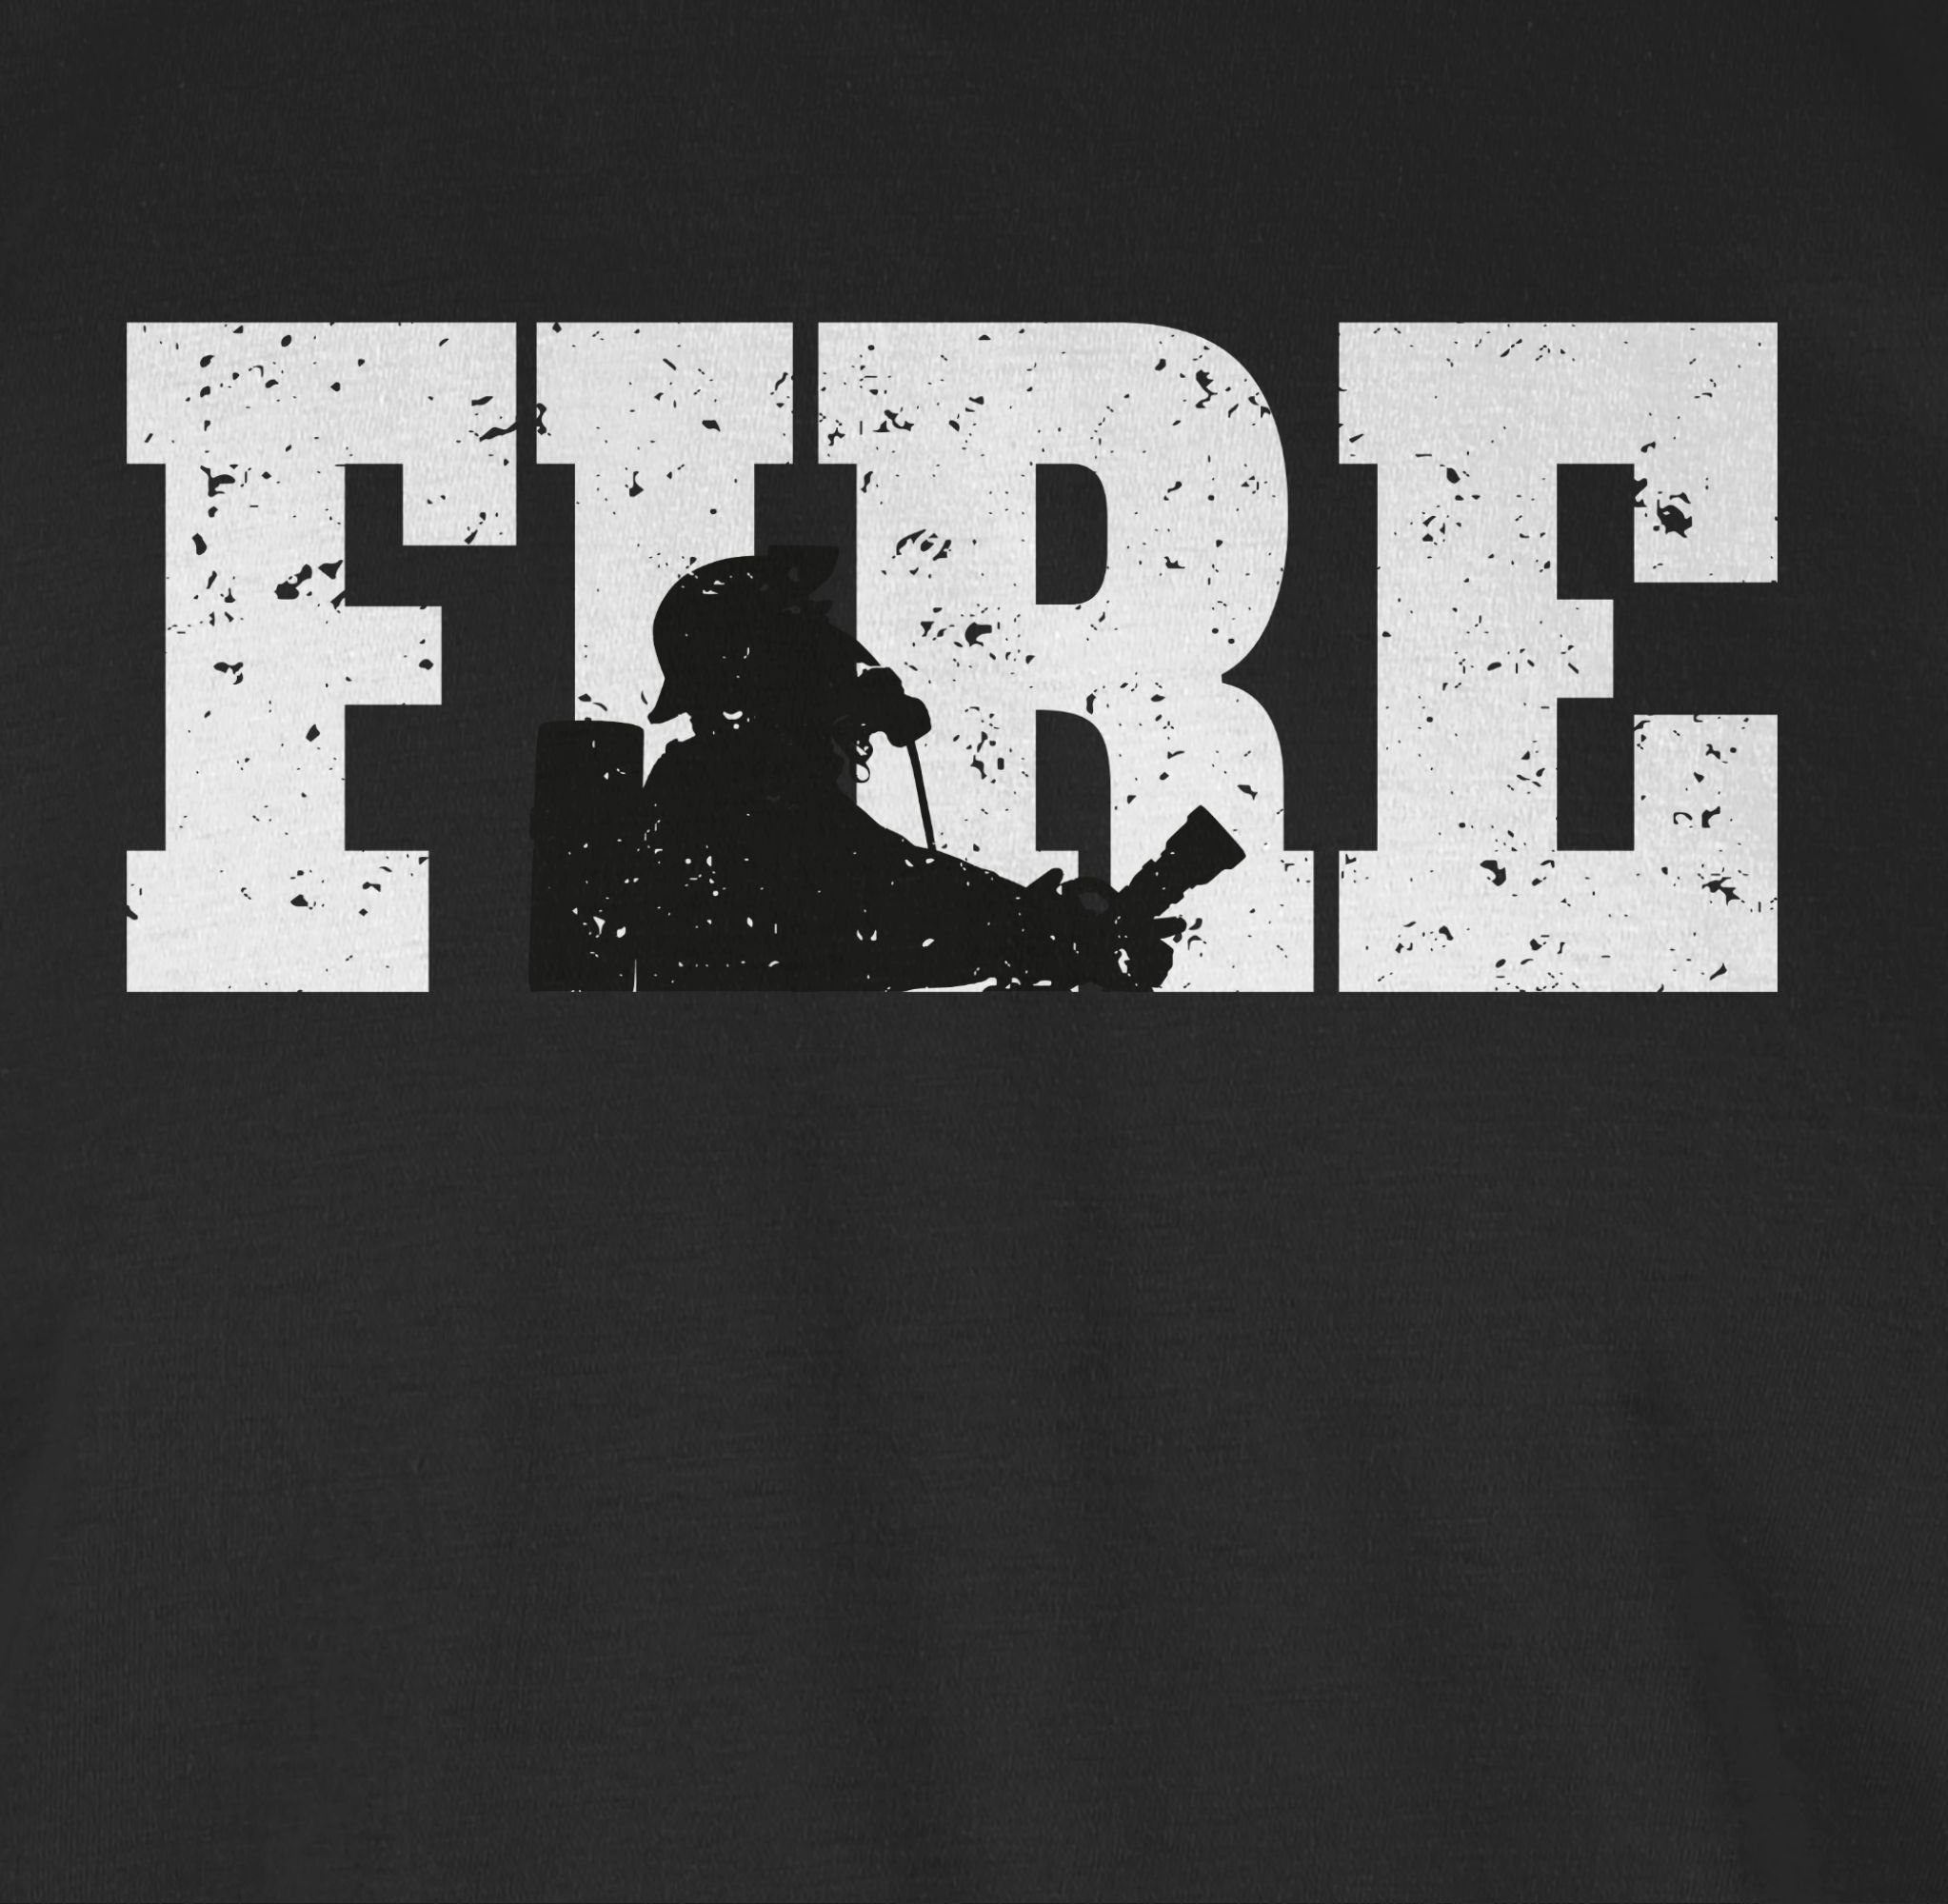 2 Schwarz Feuerwehr T-Shirt Fire Shirtracer